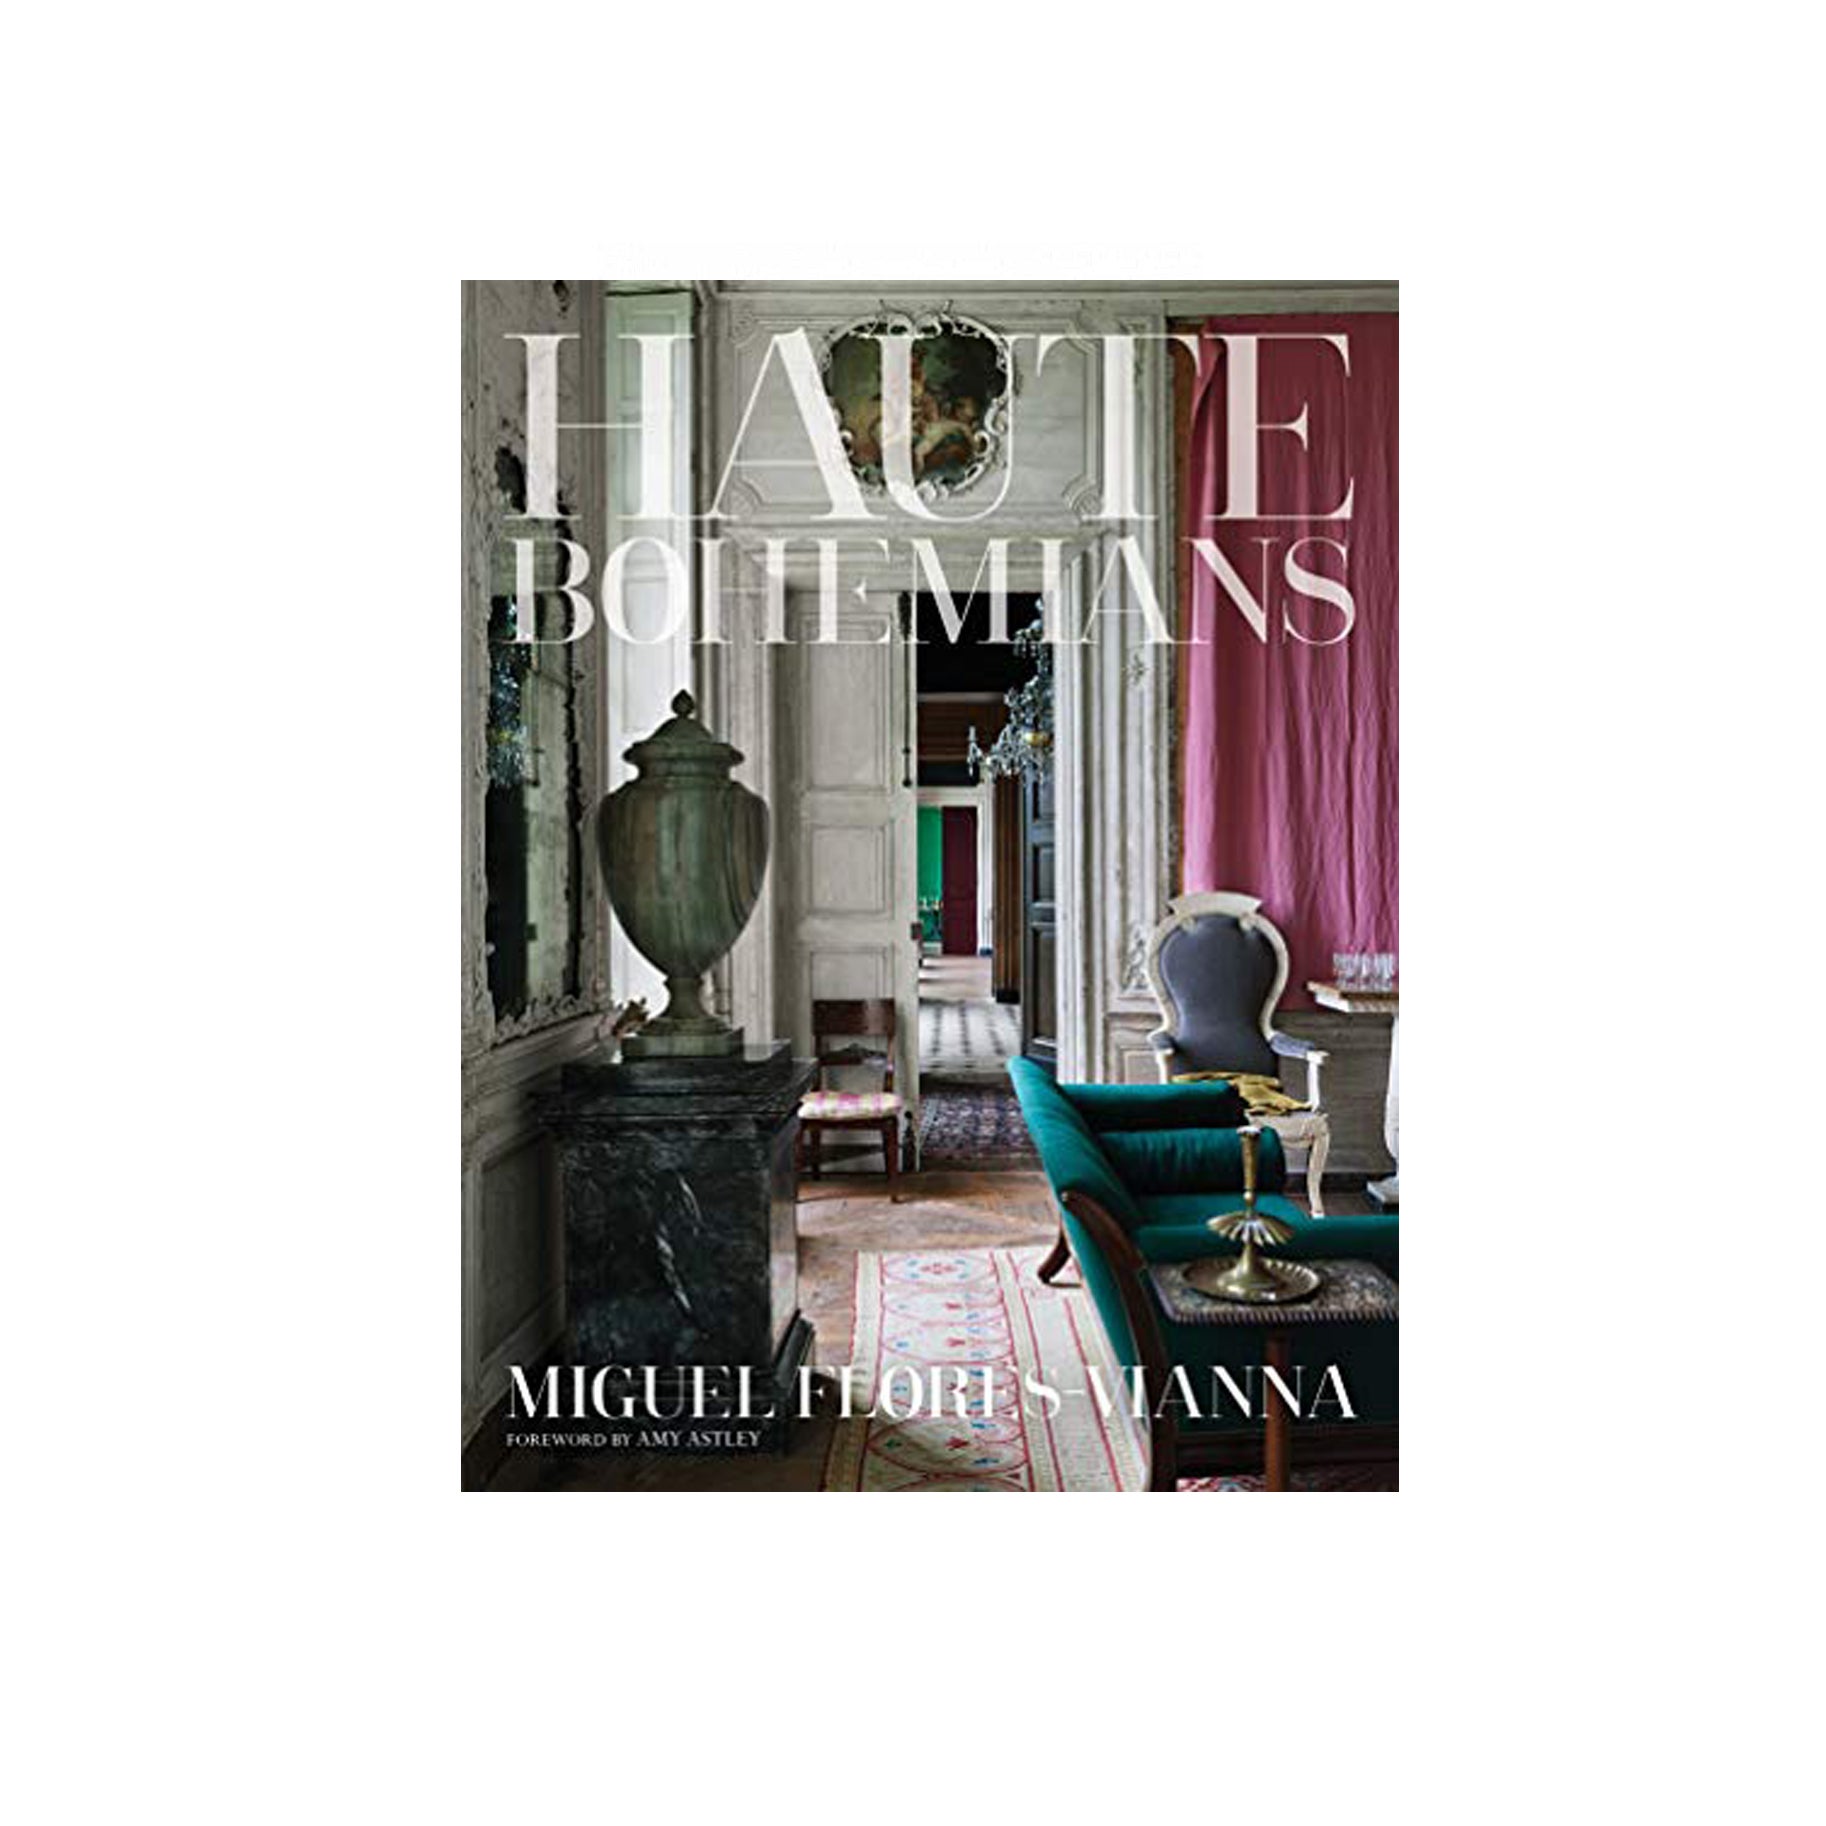 The Best Interior Design Book Option: Haute Bohemians by Miguel Flores Vianna